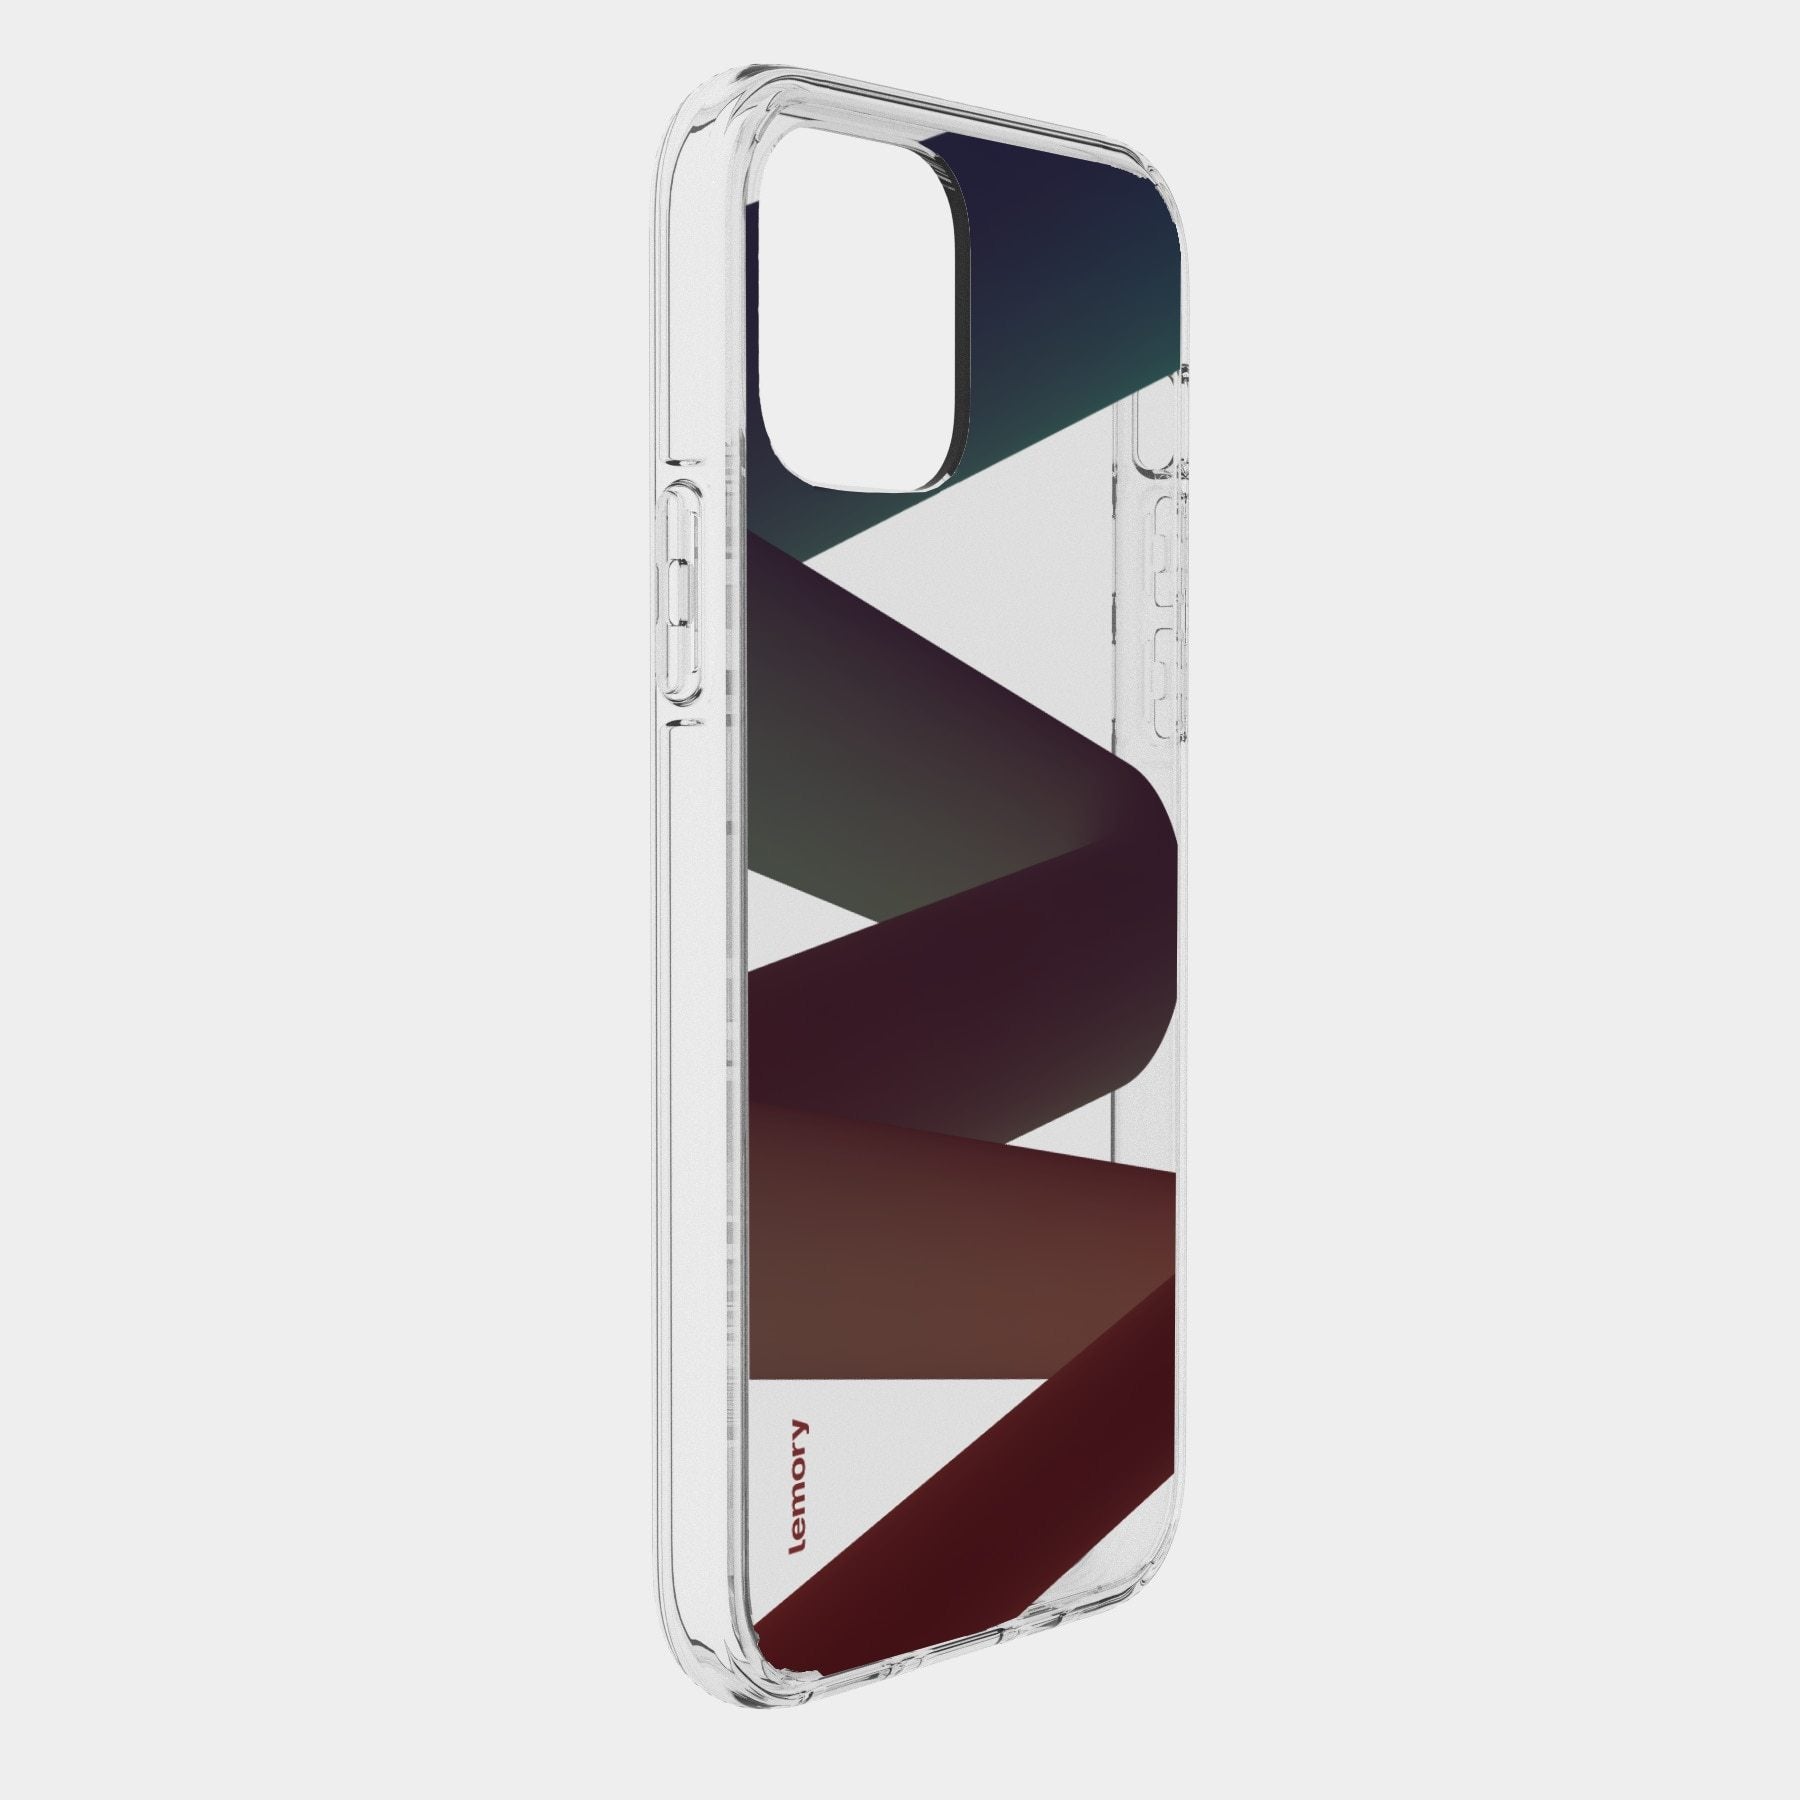 Prémiový silikonový kryt Lemory Clear na mobil Apple iPhone X / XS - Sunset 3-4 - výprodej (Prémiový silikonový kryt, pouzdro, obal Lemory Clear na mobilní telefon Apple iPhone X / Apple iPhone XS - Sunset 3-4)